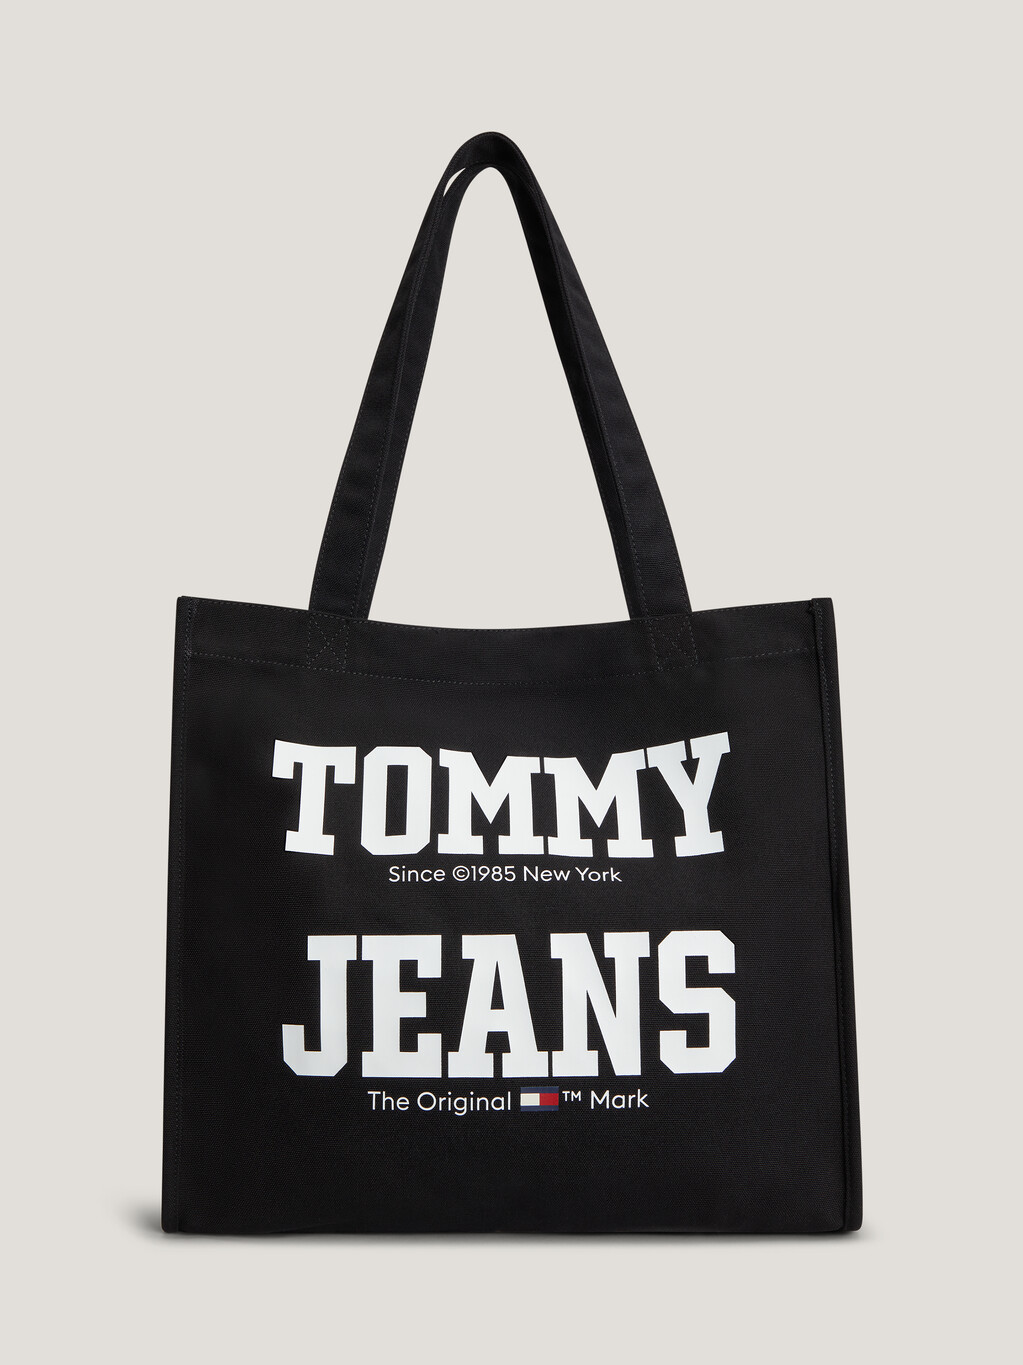 Tommy Jeans 帆布托特包, Black, hi-res